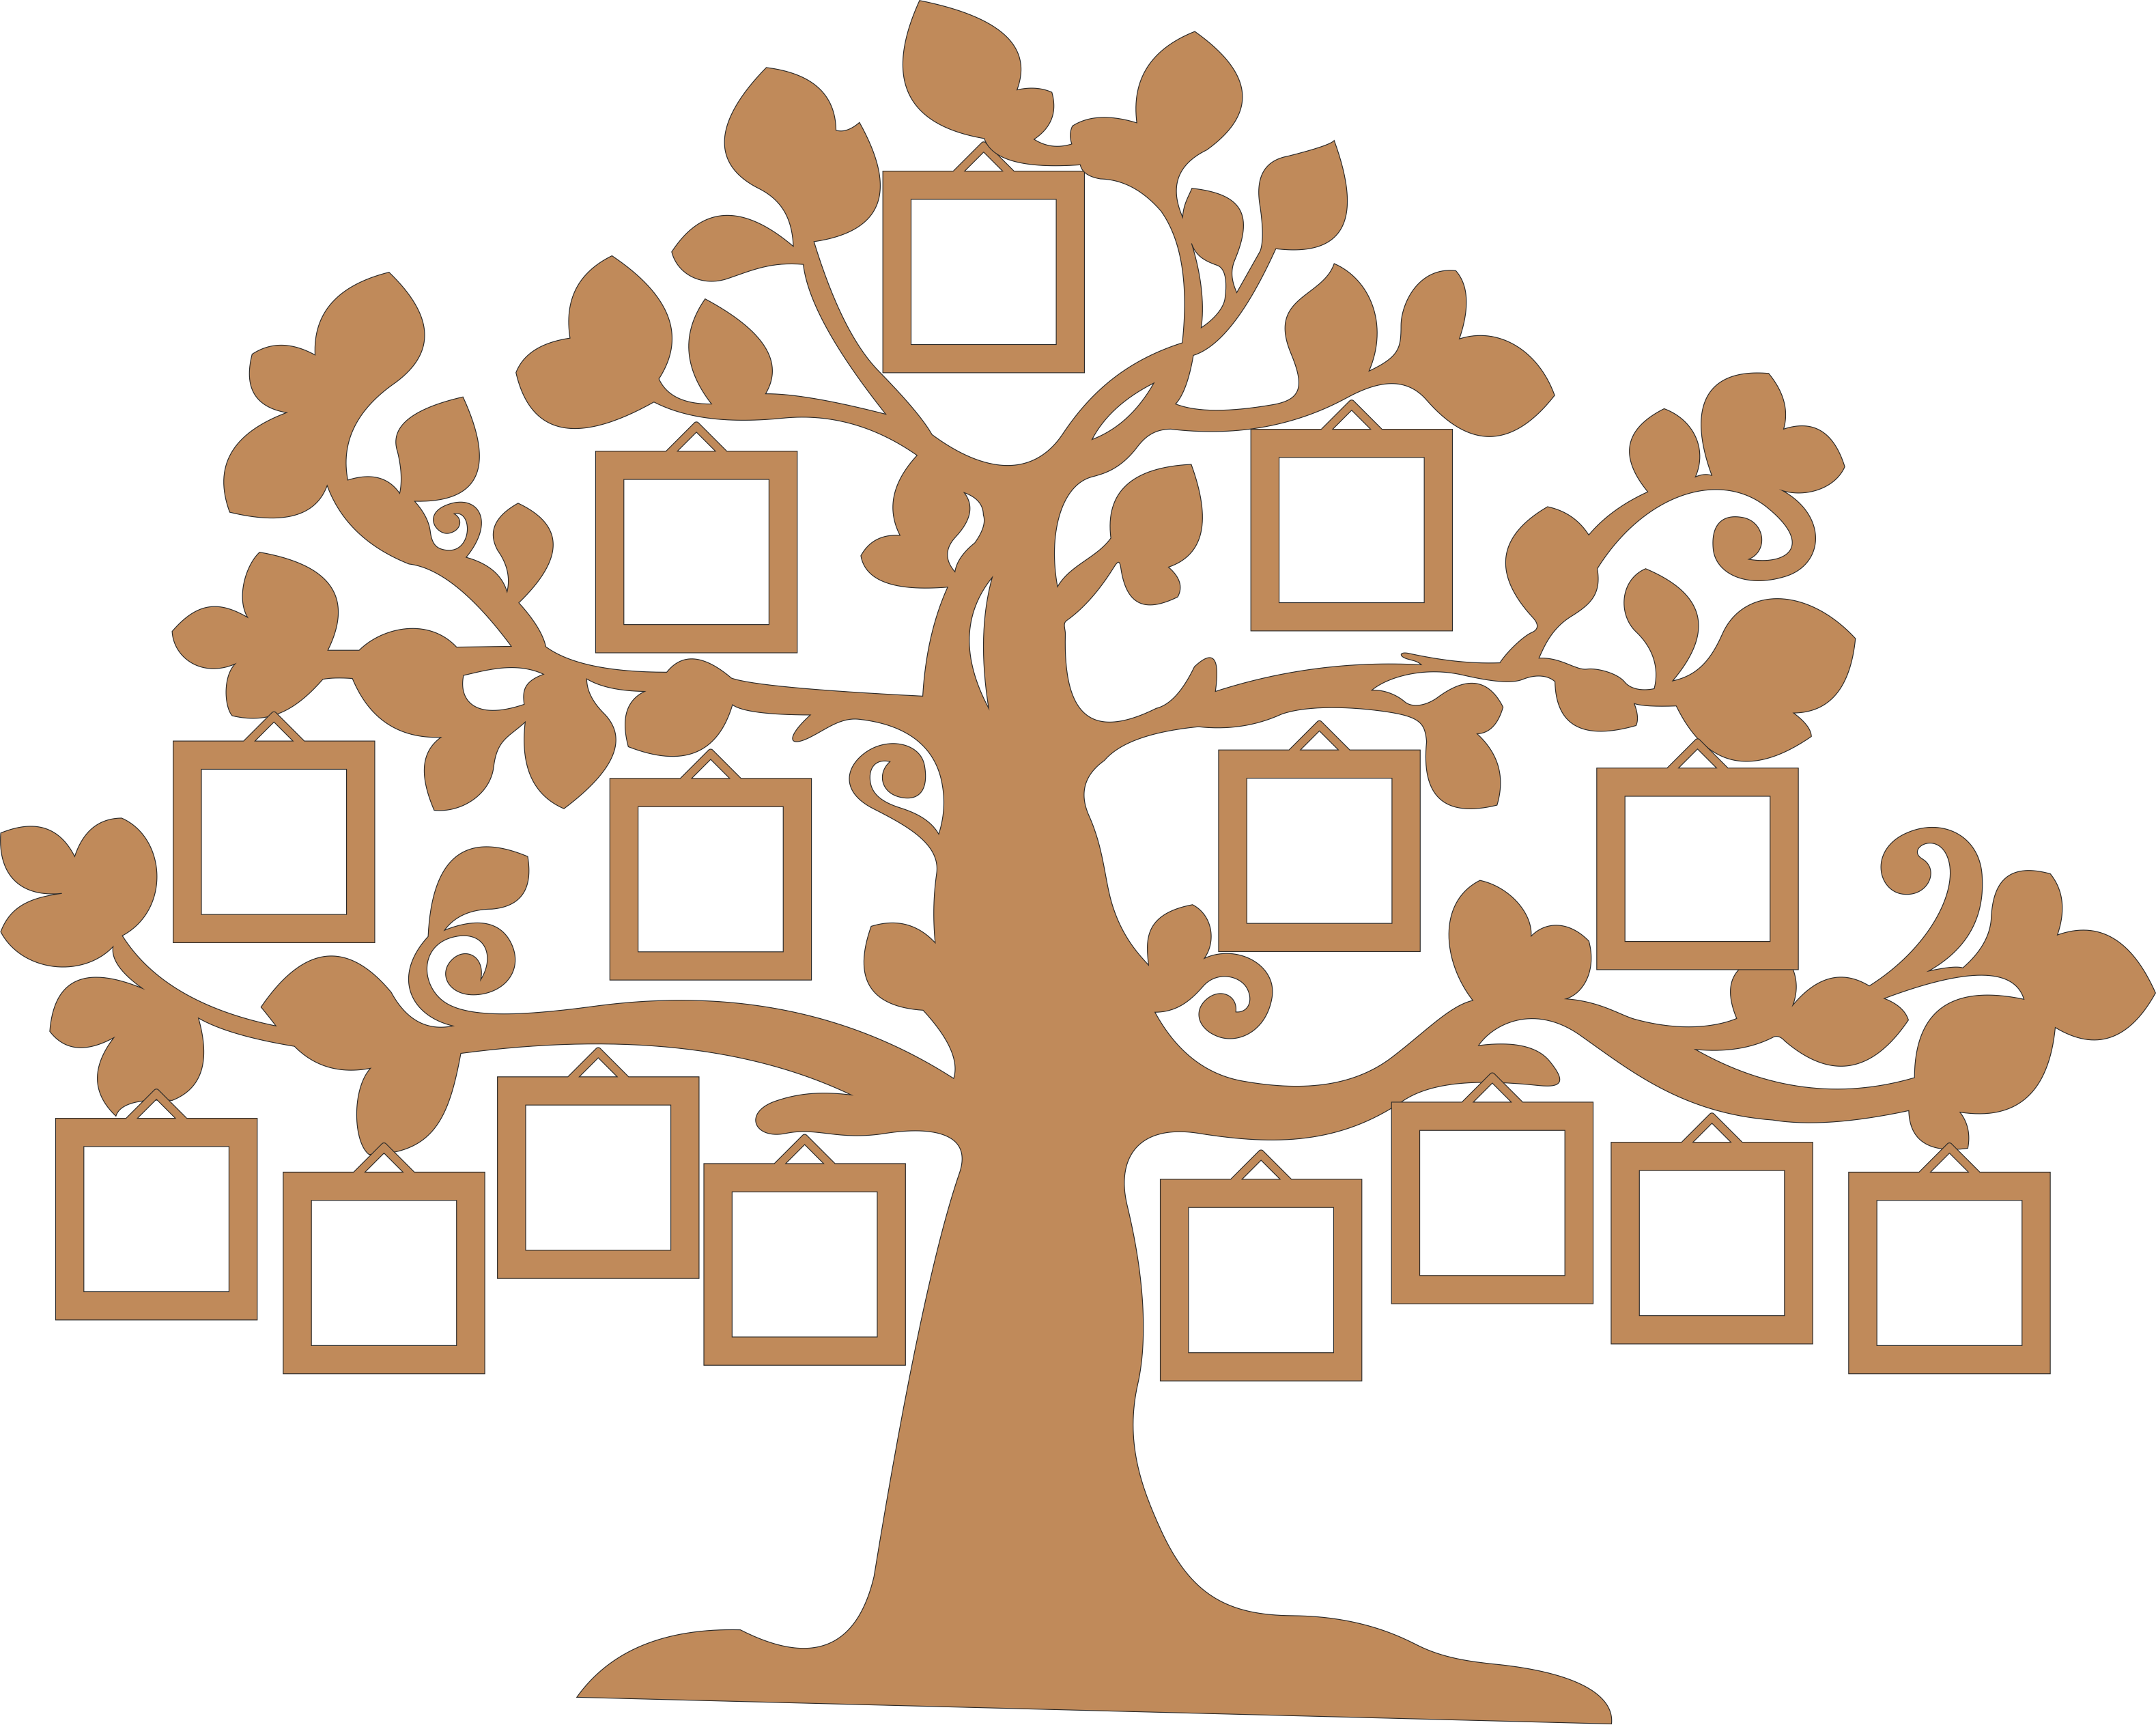 Как нарисовать семейное дерево: легкий способ для детей